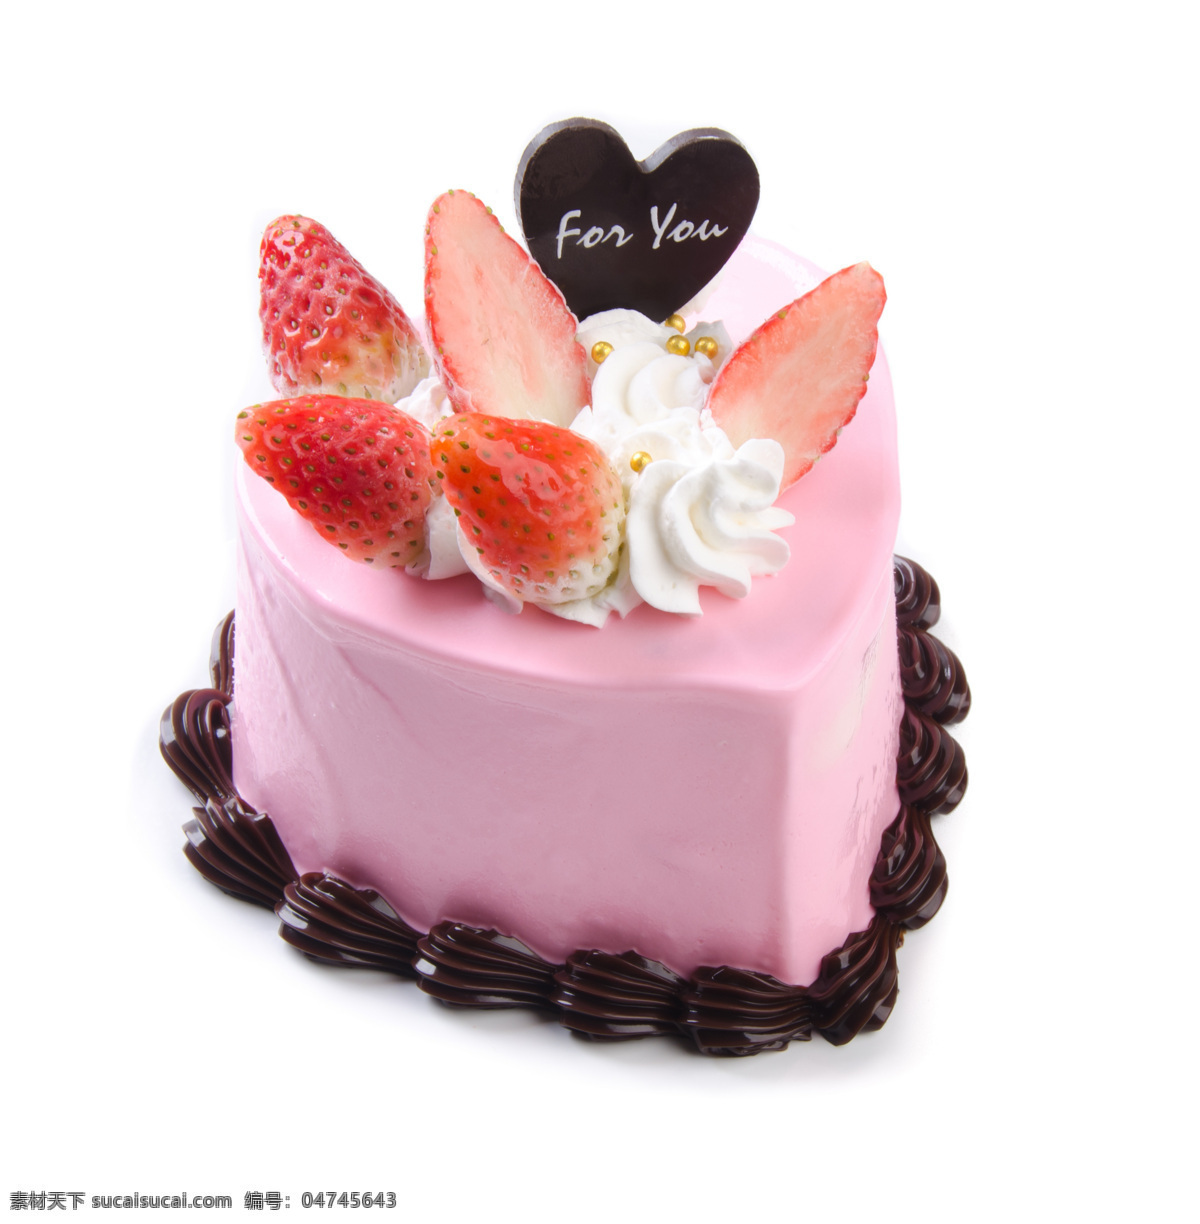 巧克力 粉红 草莓 蛋糕 草莓蛋糕 美食 甜品 美味 食物 生日蛋糕图片 餐饮美食